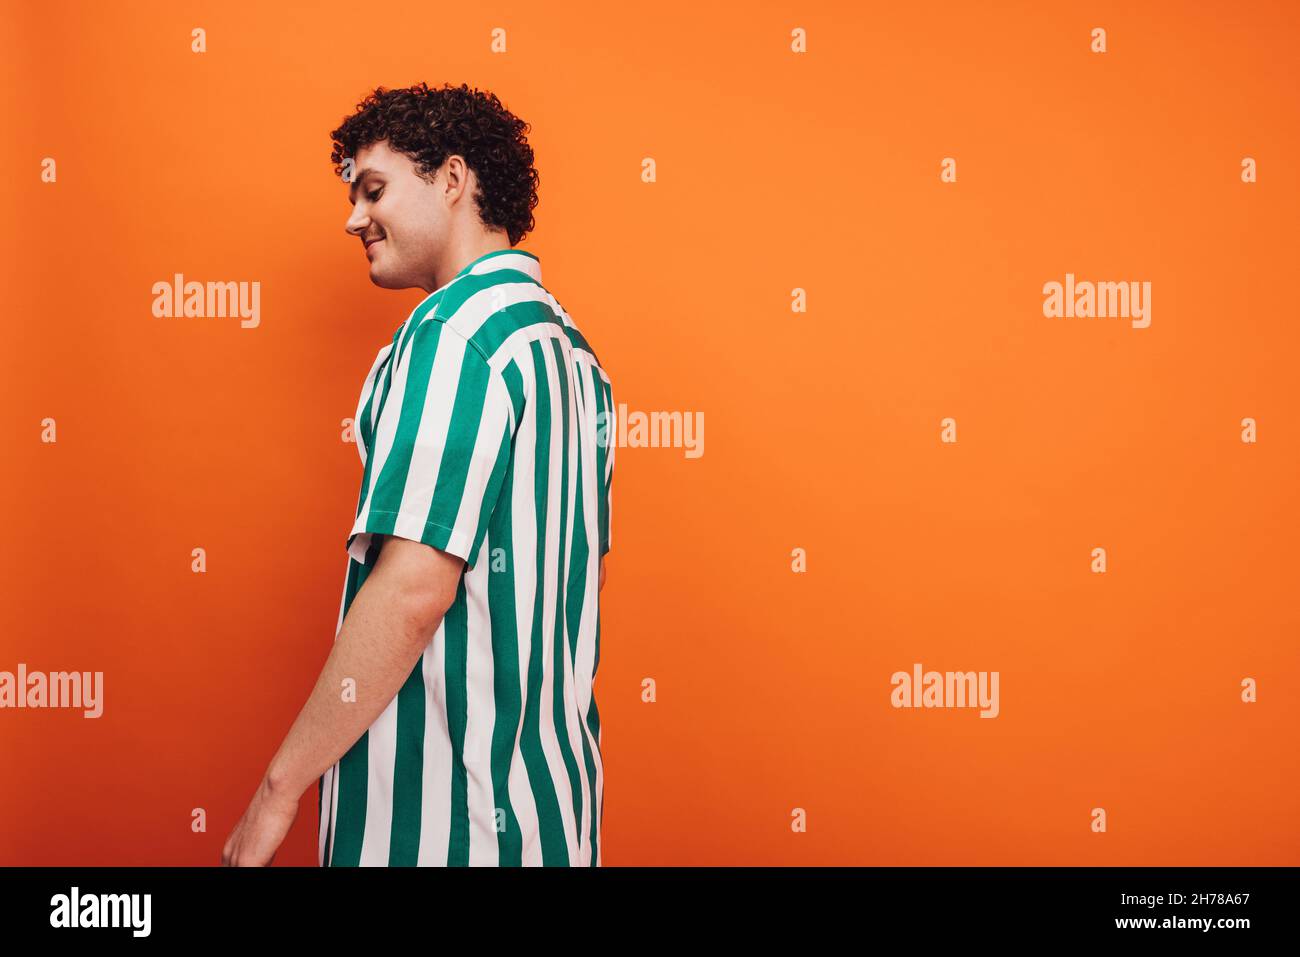 Fröhlicher junger queerer Mann, der vor einem orangefarbenen Hintergrund steht. Seitenansicht eines glücklichen jungen Generation z Hipsters, der selbstbewusst im Stehen aussieht Stockfoto